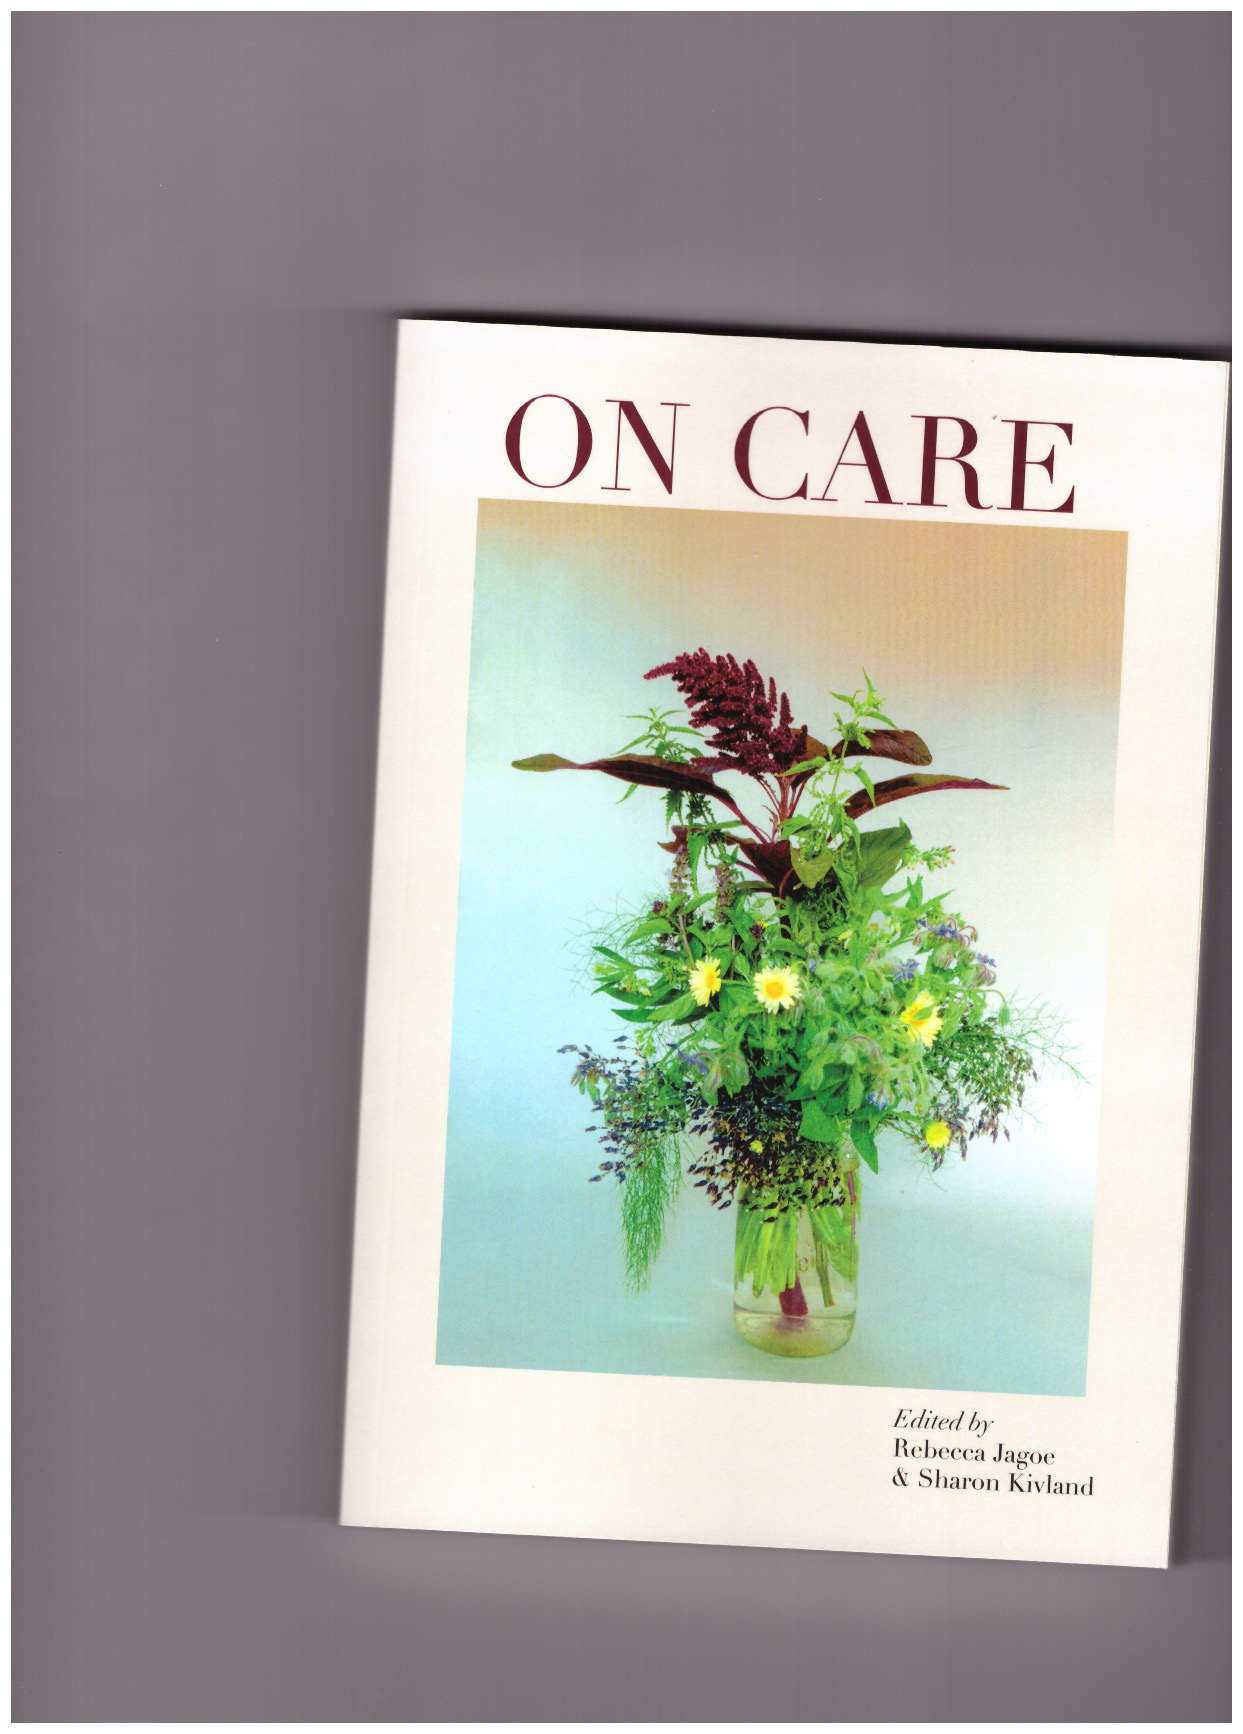 JAGOE, Rebecca; KIVLAND, Sharon (eds.) - On care